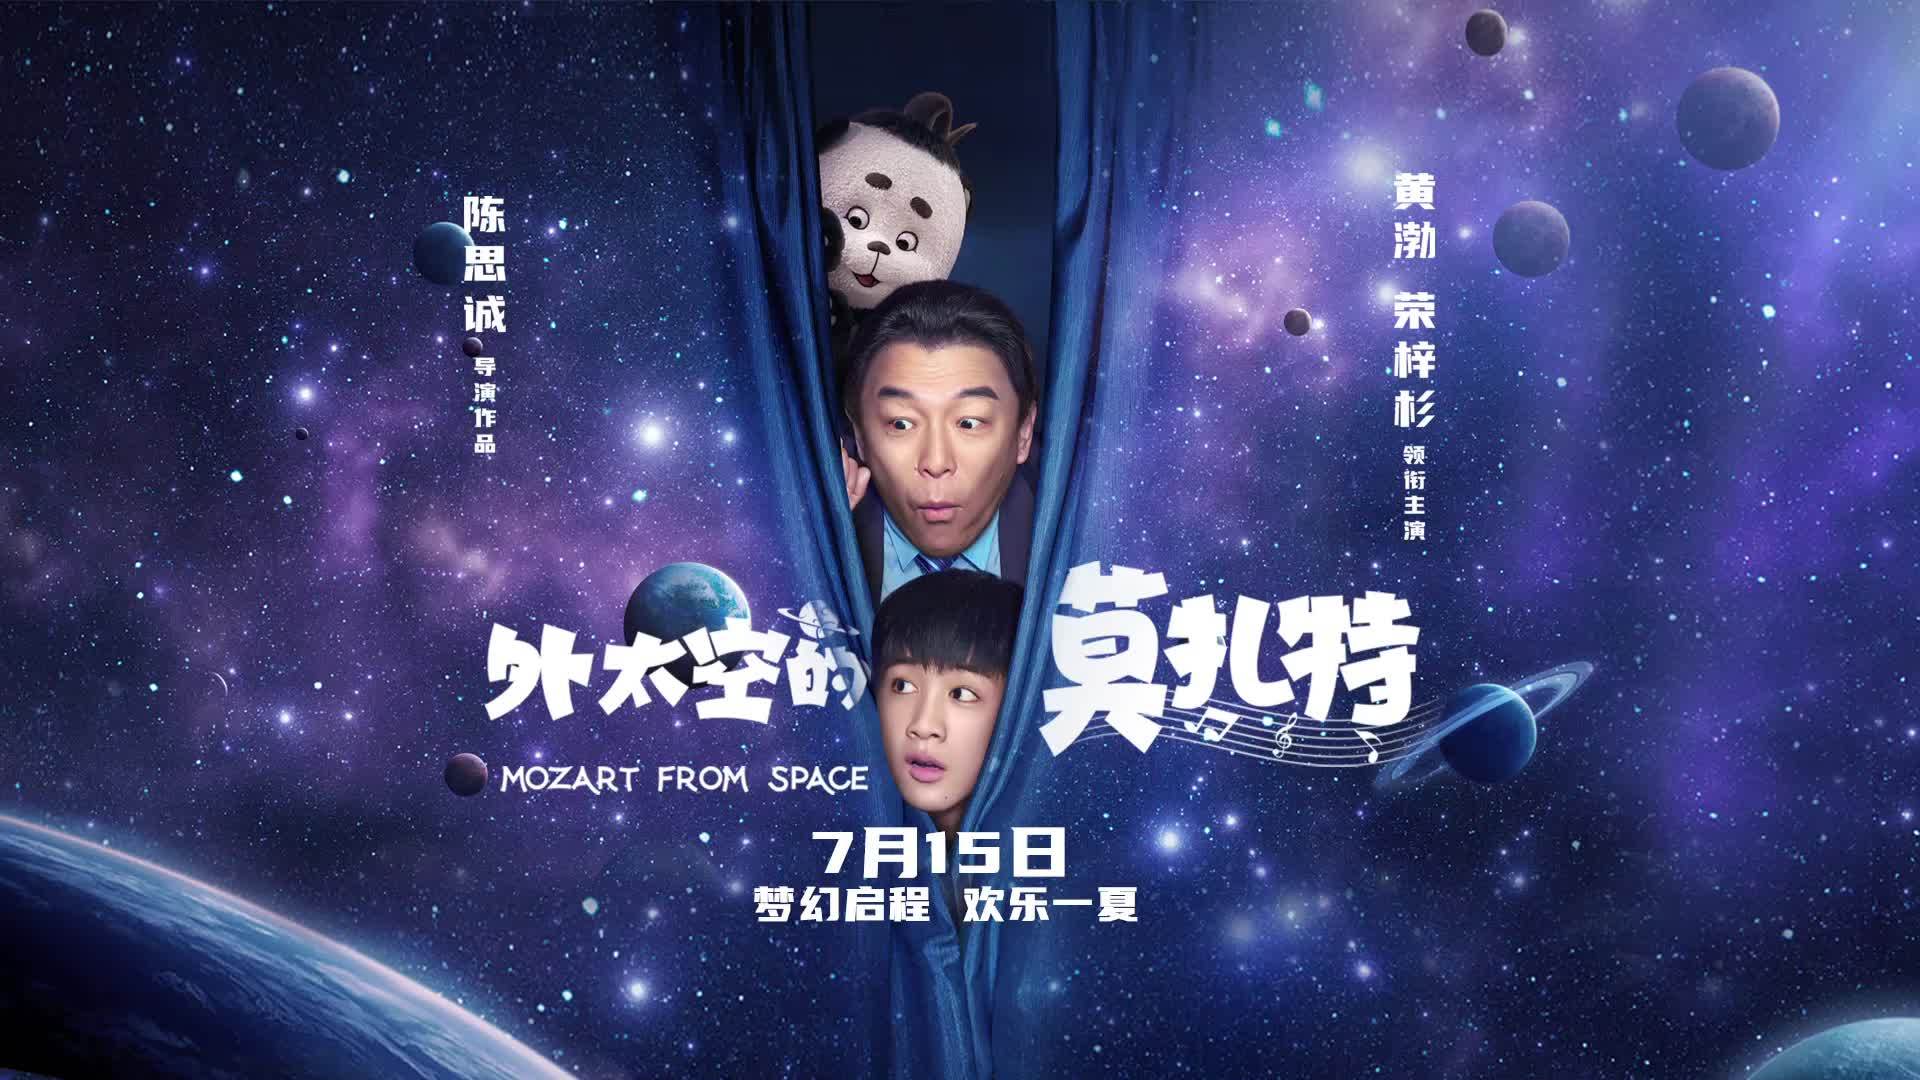 陈思诚执导的奇幻合家欢电影《外太空的莫扎特》定档7.15